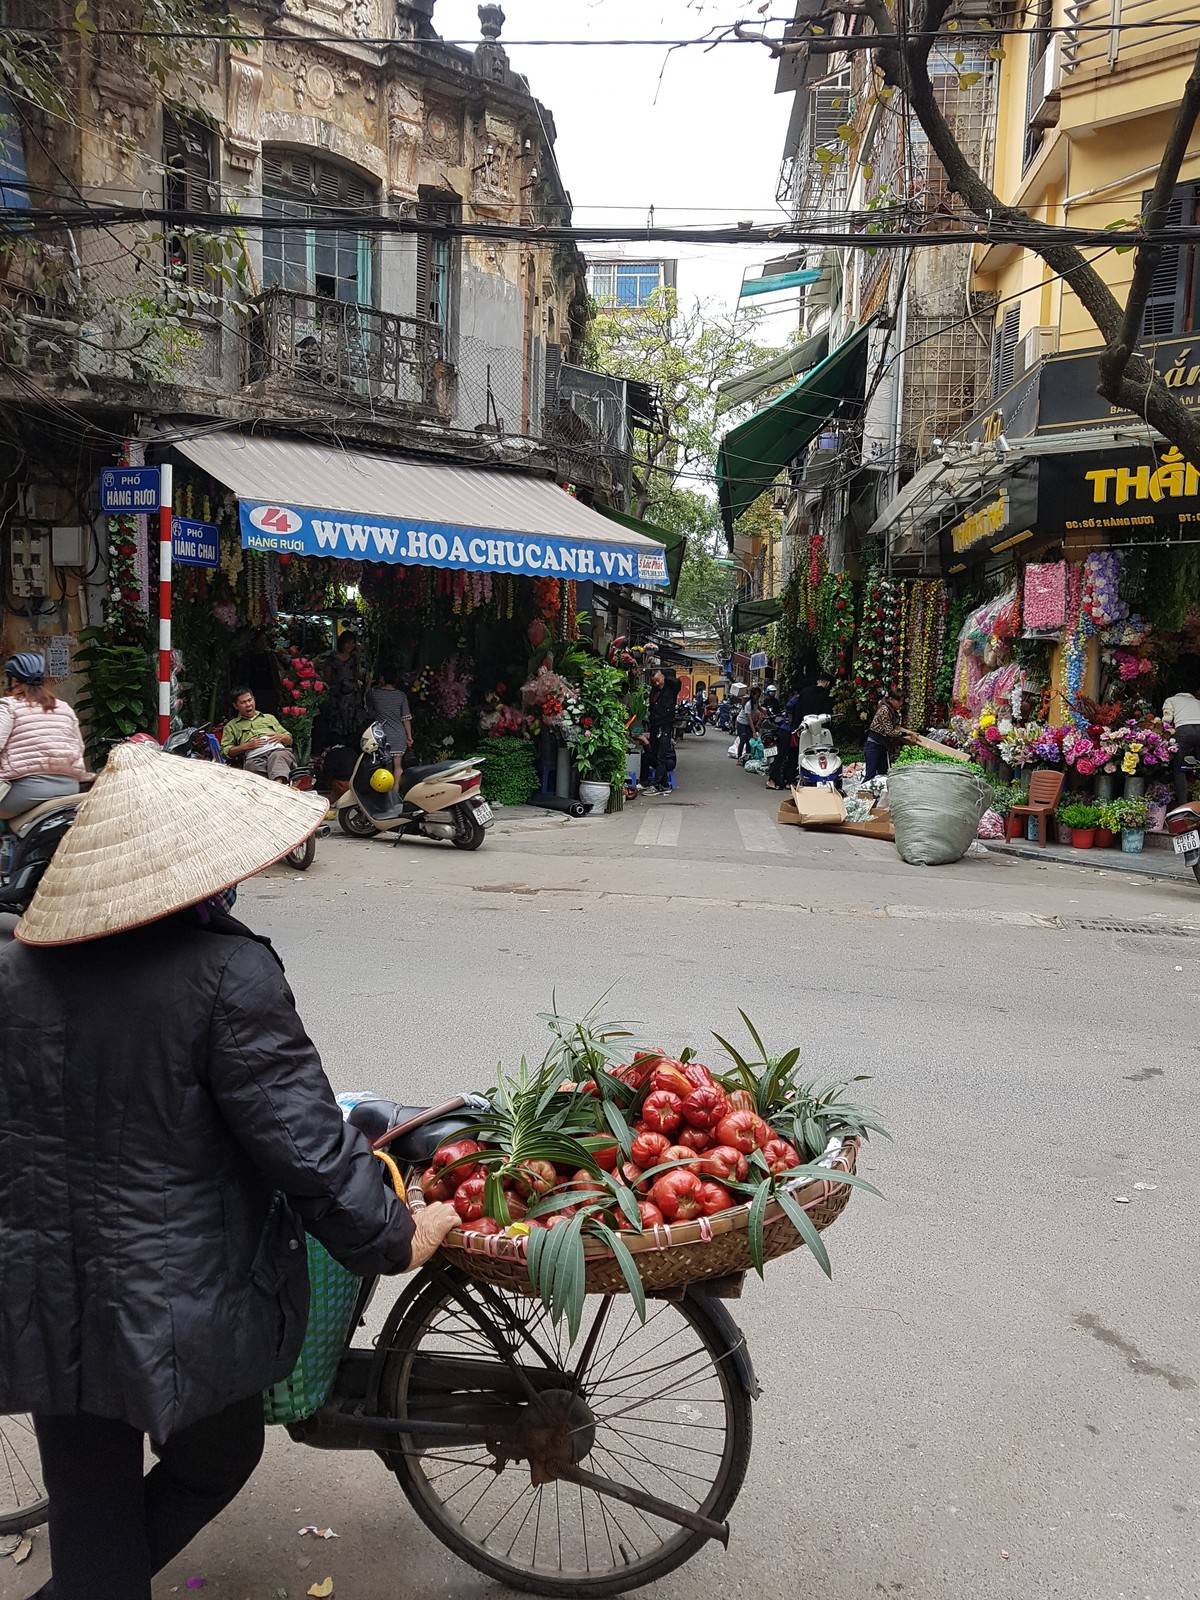 Die Altstadt von Hanoi und ihre Obstverkäufer